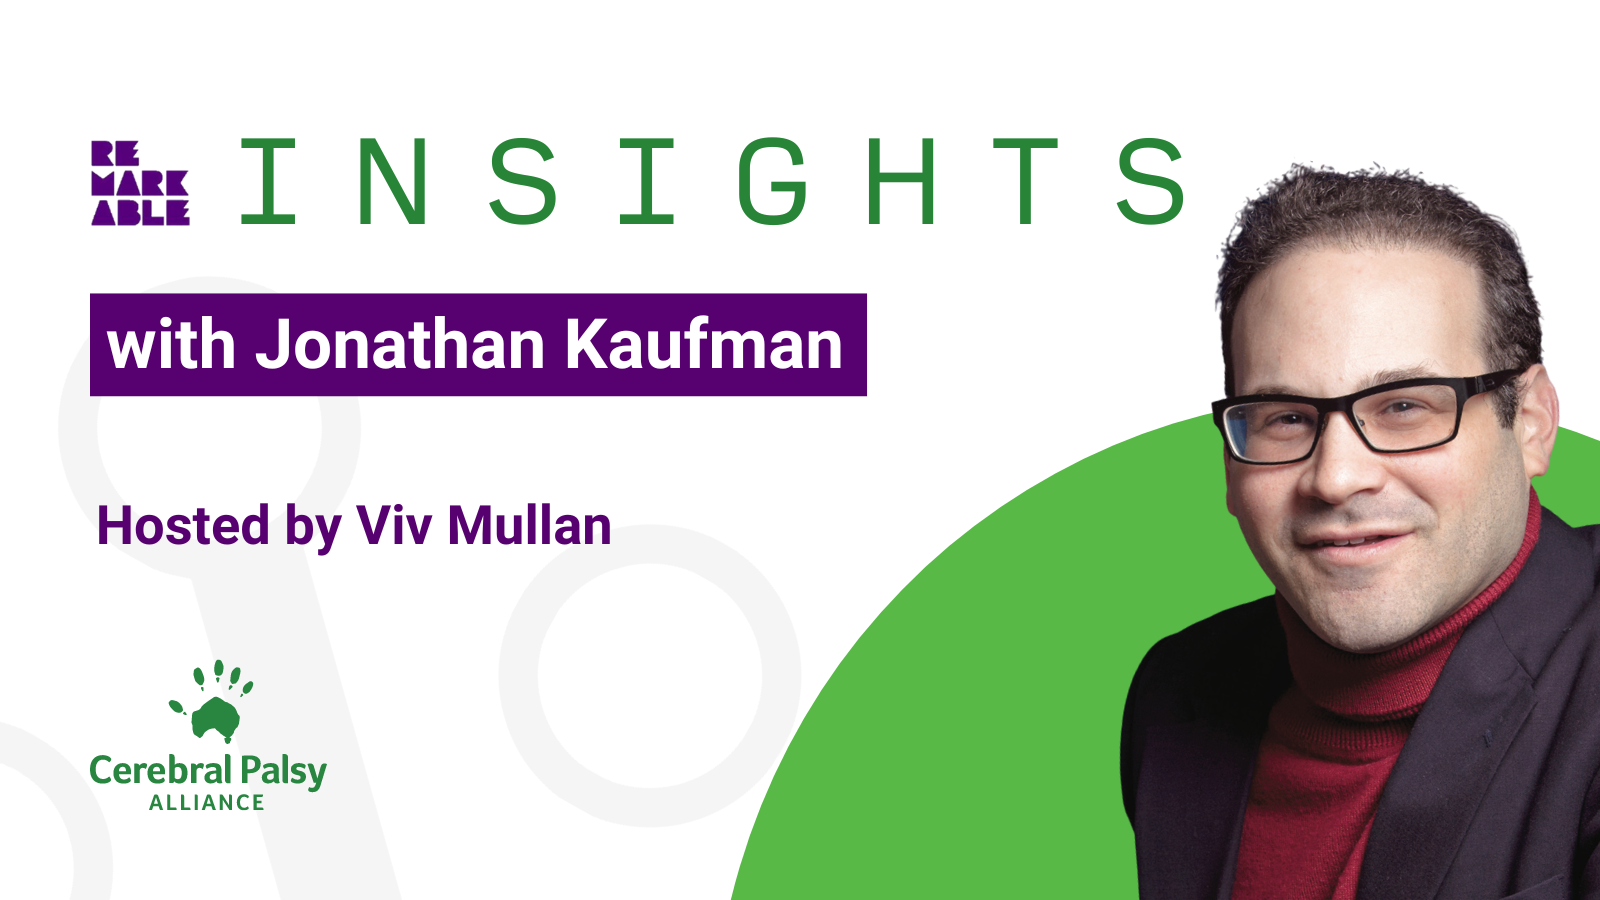 Remarkable Insights: Jonathan Kaufman